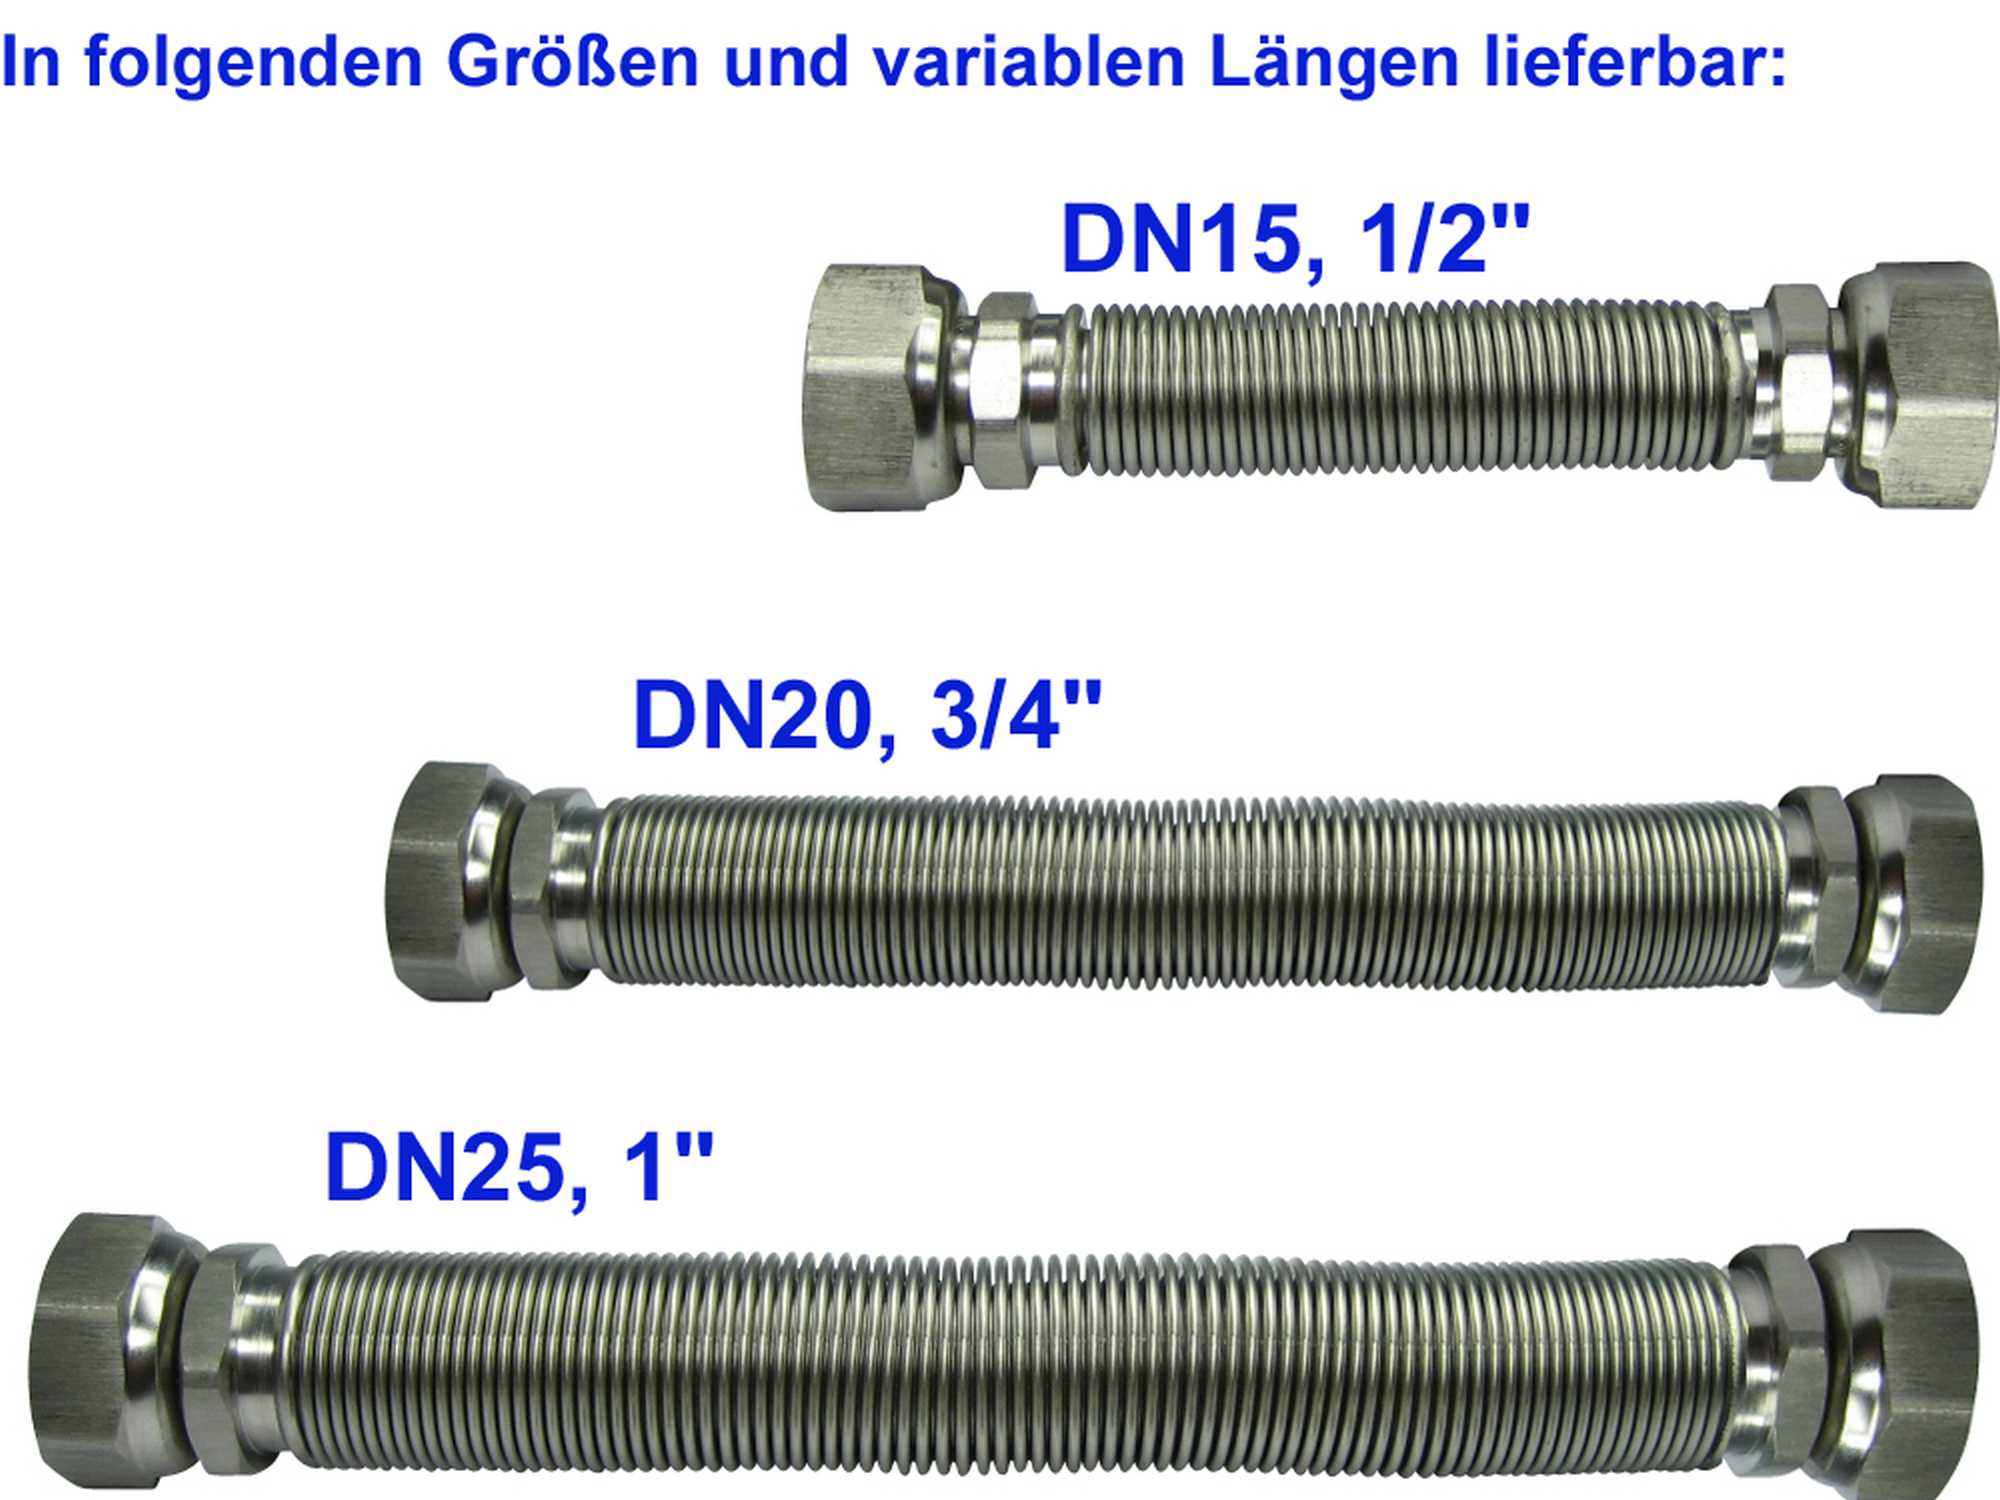 Edelstahlwellrohr ausziehbar, DN25 beidseitig 1" ÜM, Highflex Edelstahlschlauch 1.4404, formstabil, variable Längen von 75-130mm bis 1000-2.000mm